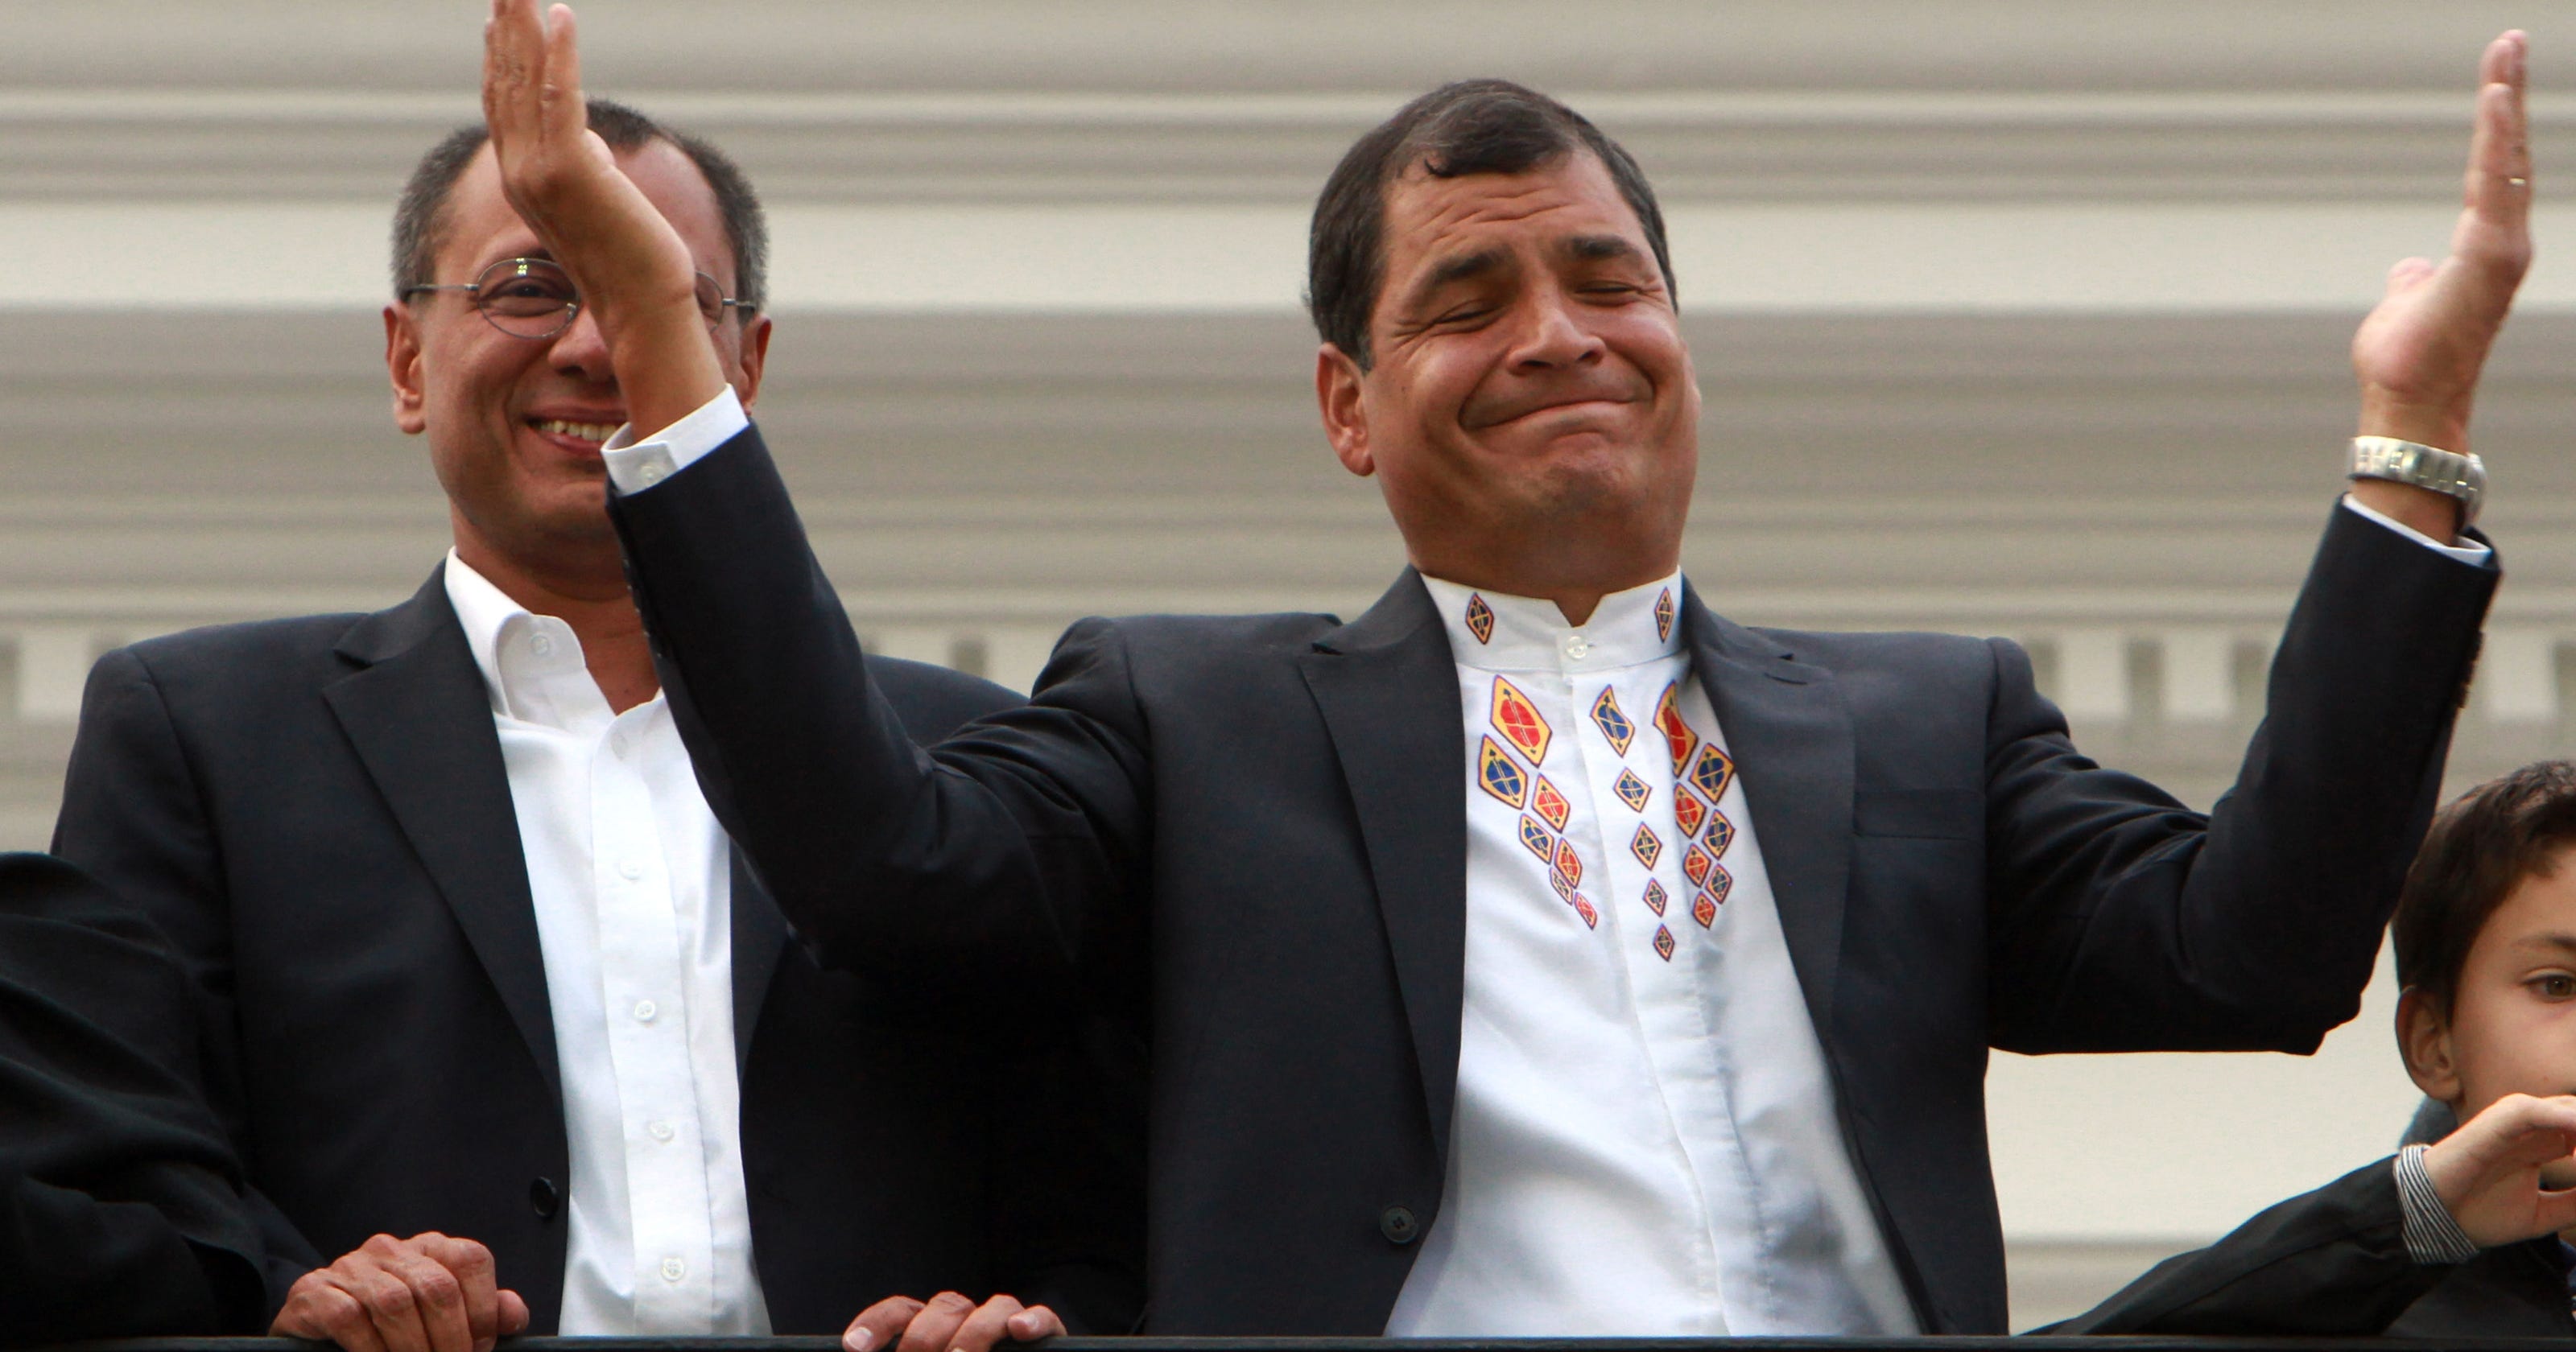 Ecuador leader Rafael Correa celebrates reelection